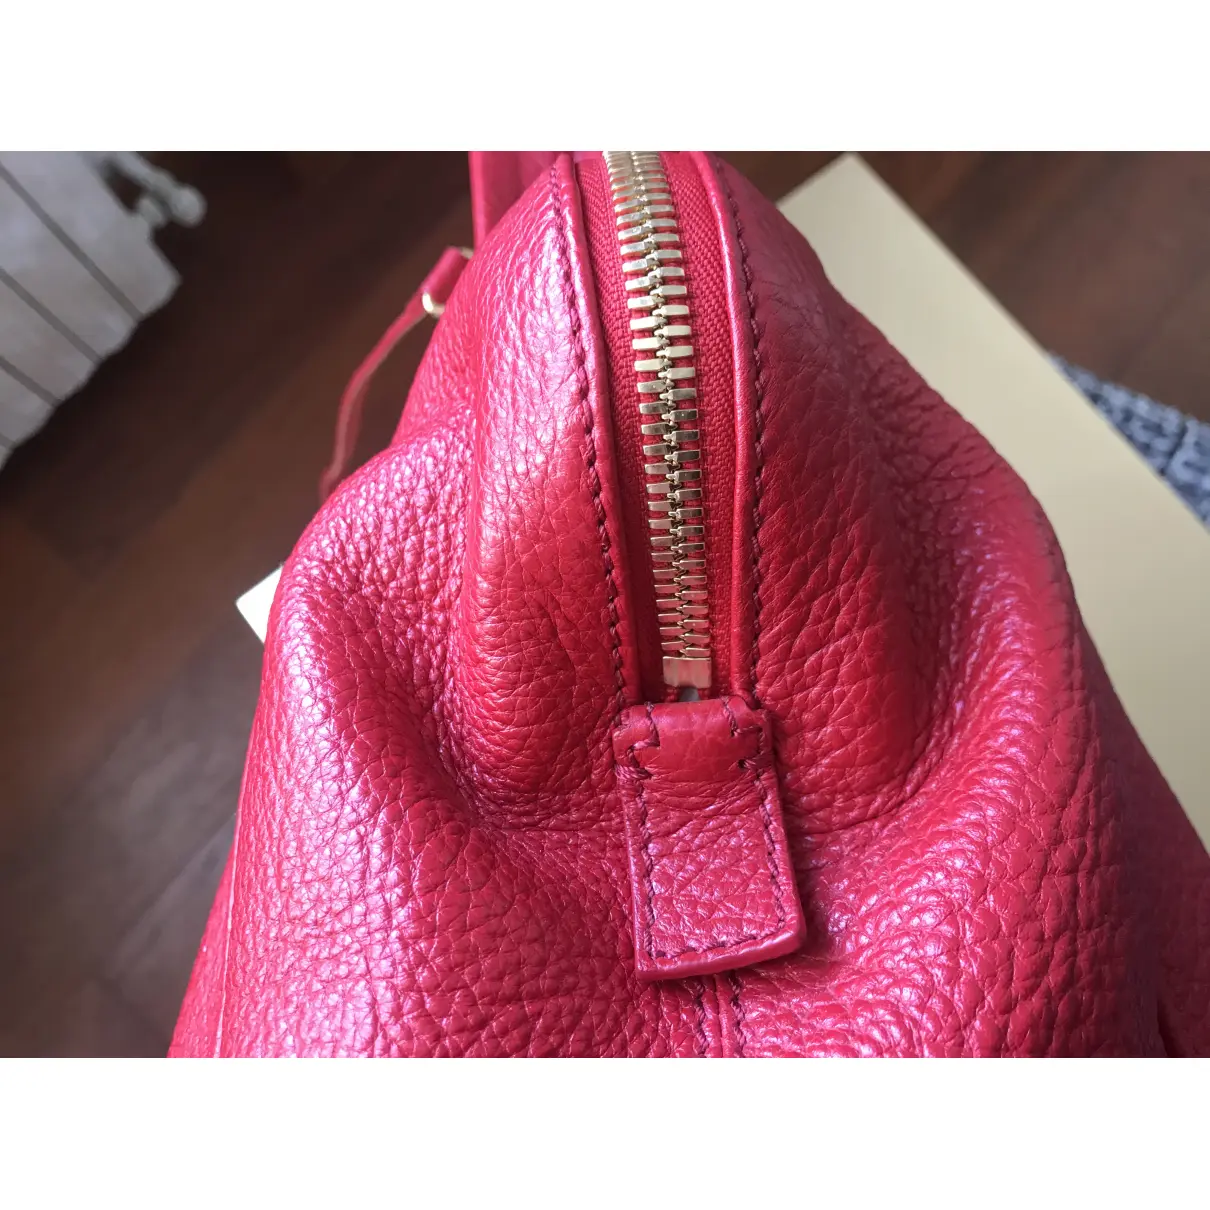 Chameleon leather handbag Fendi